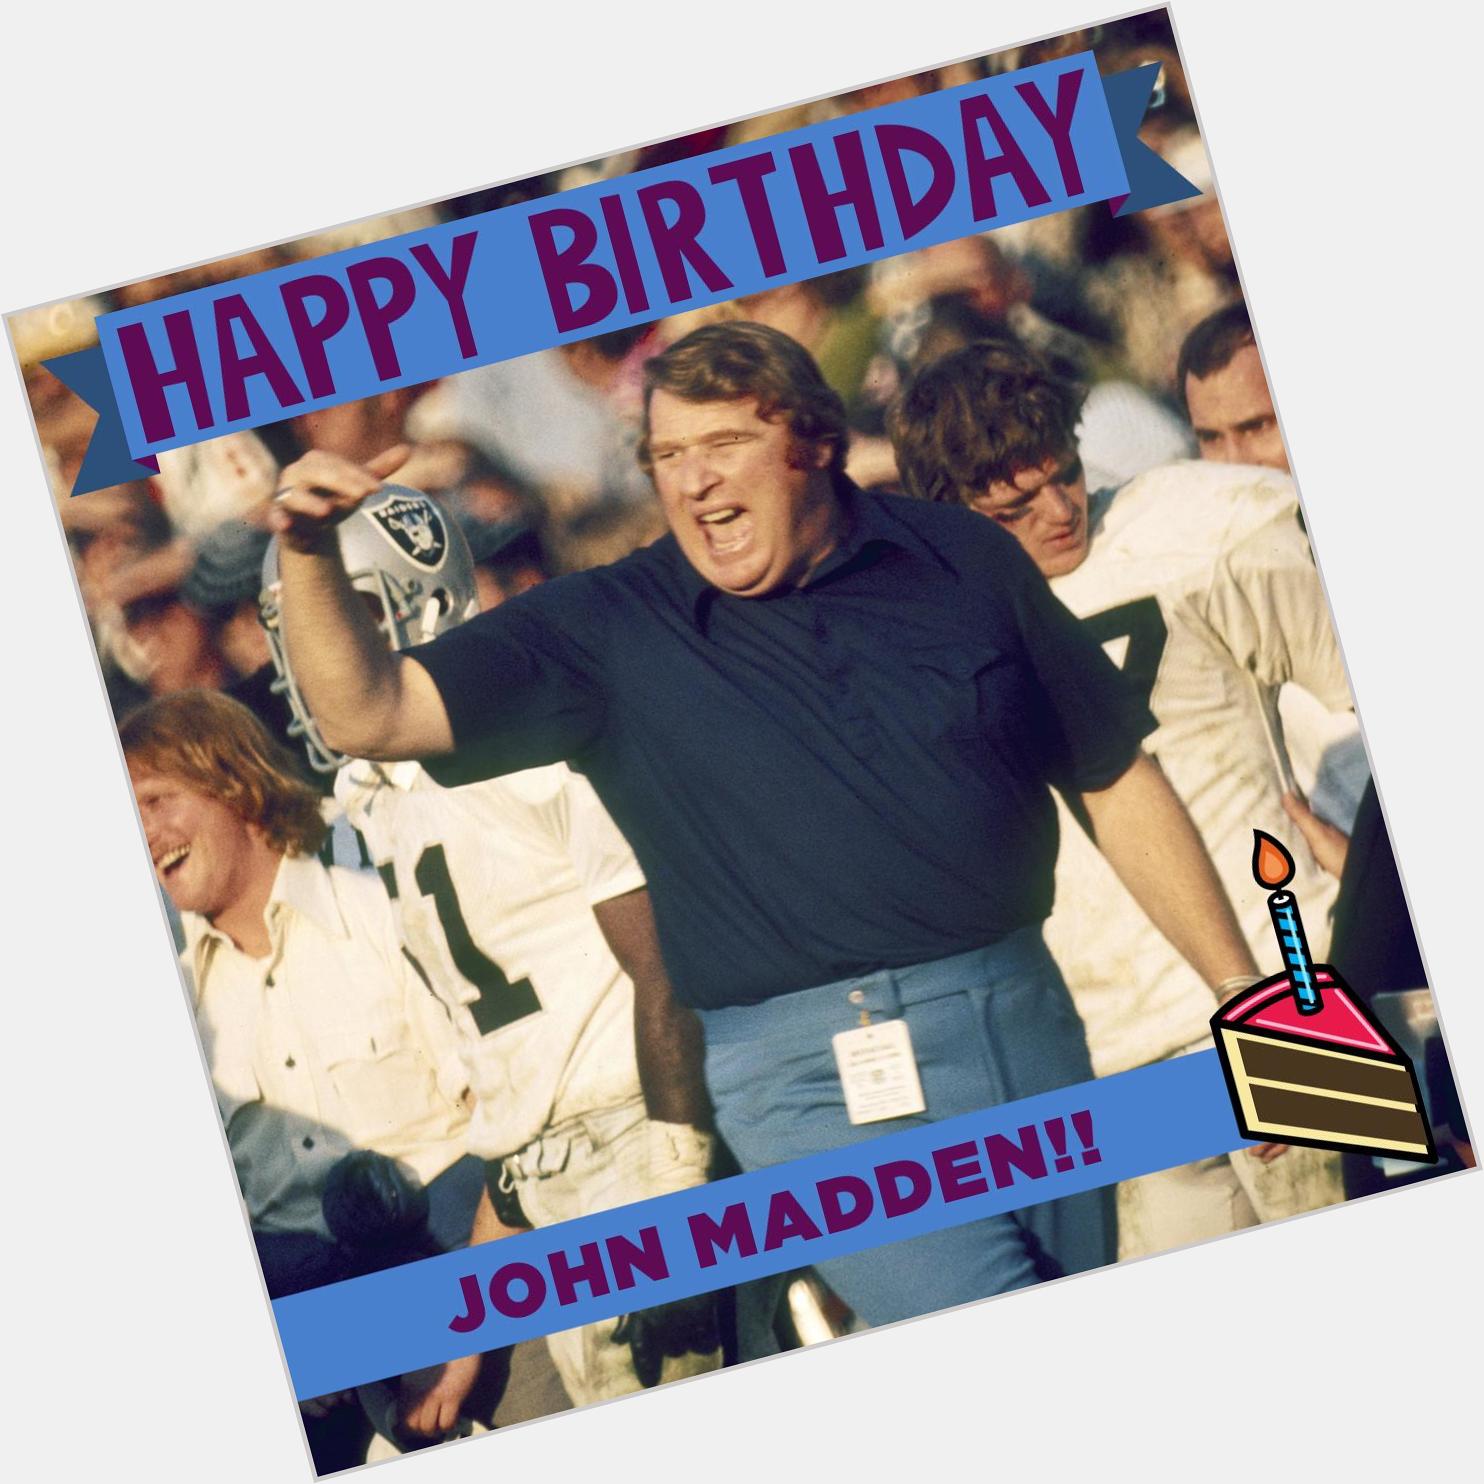 To wish the legendary John Madden a Happy Birthday! 